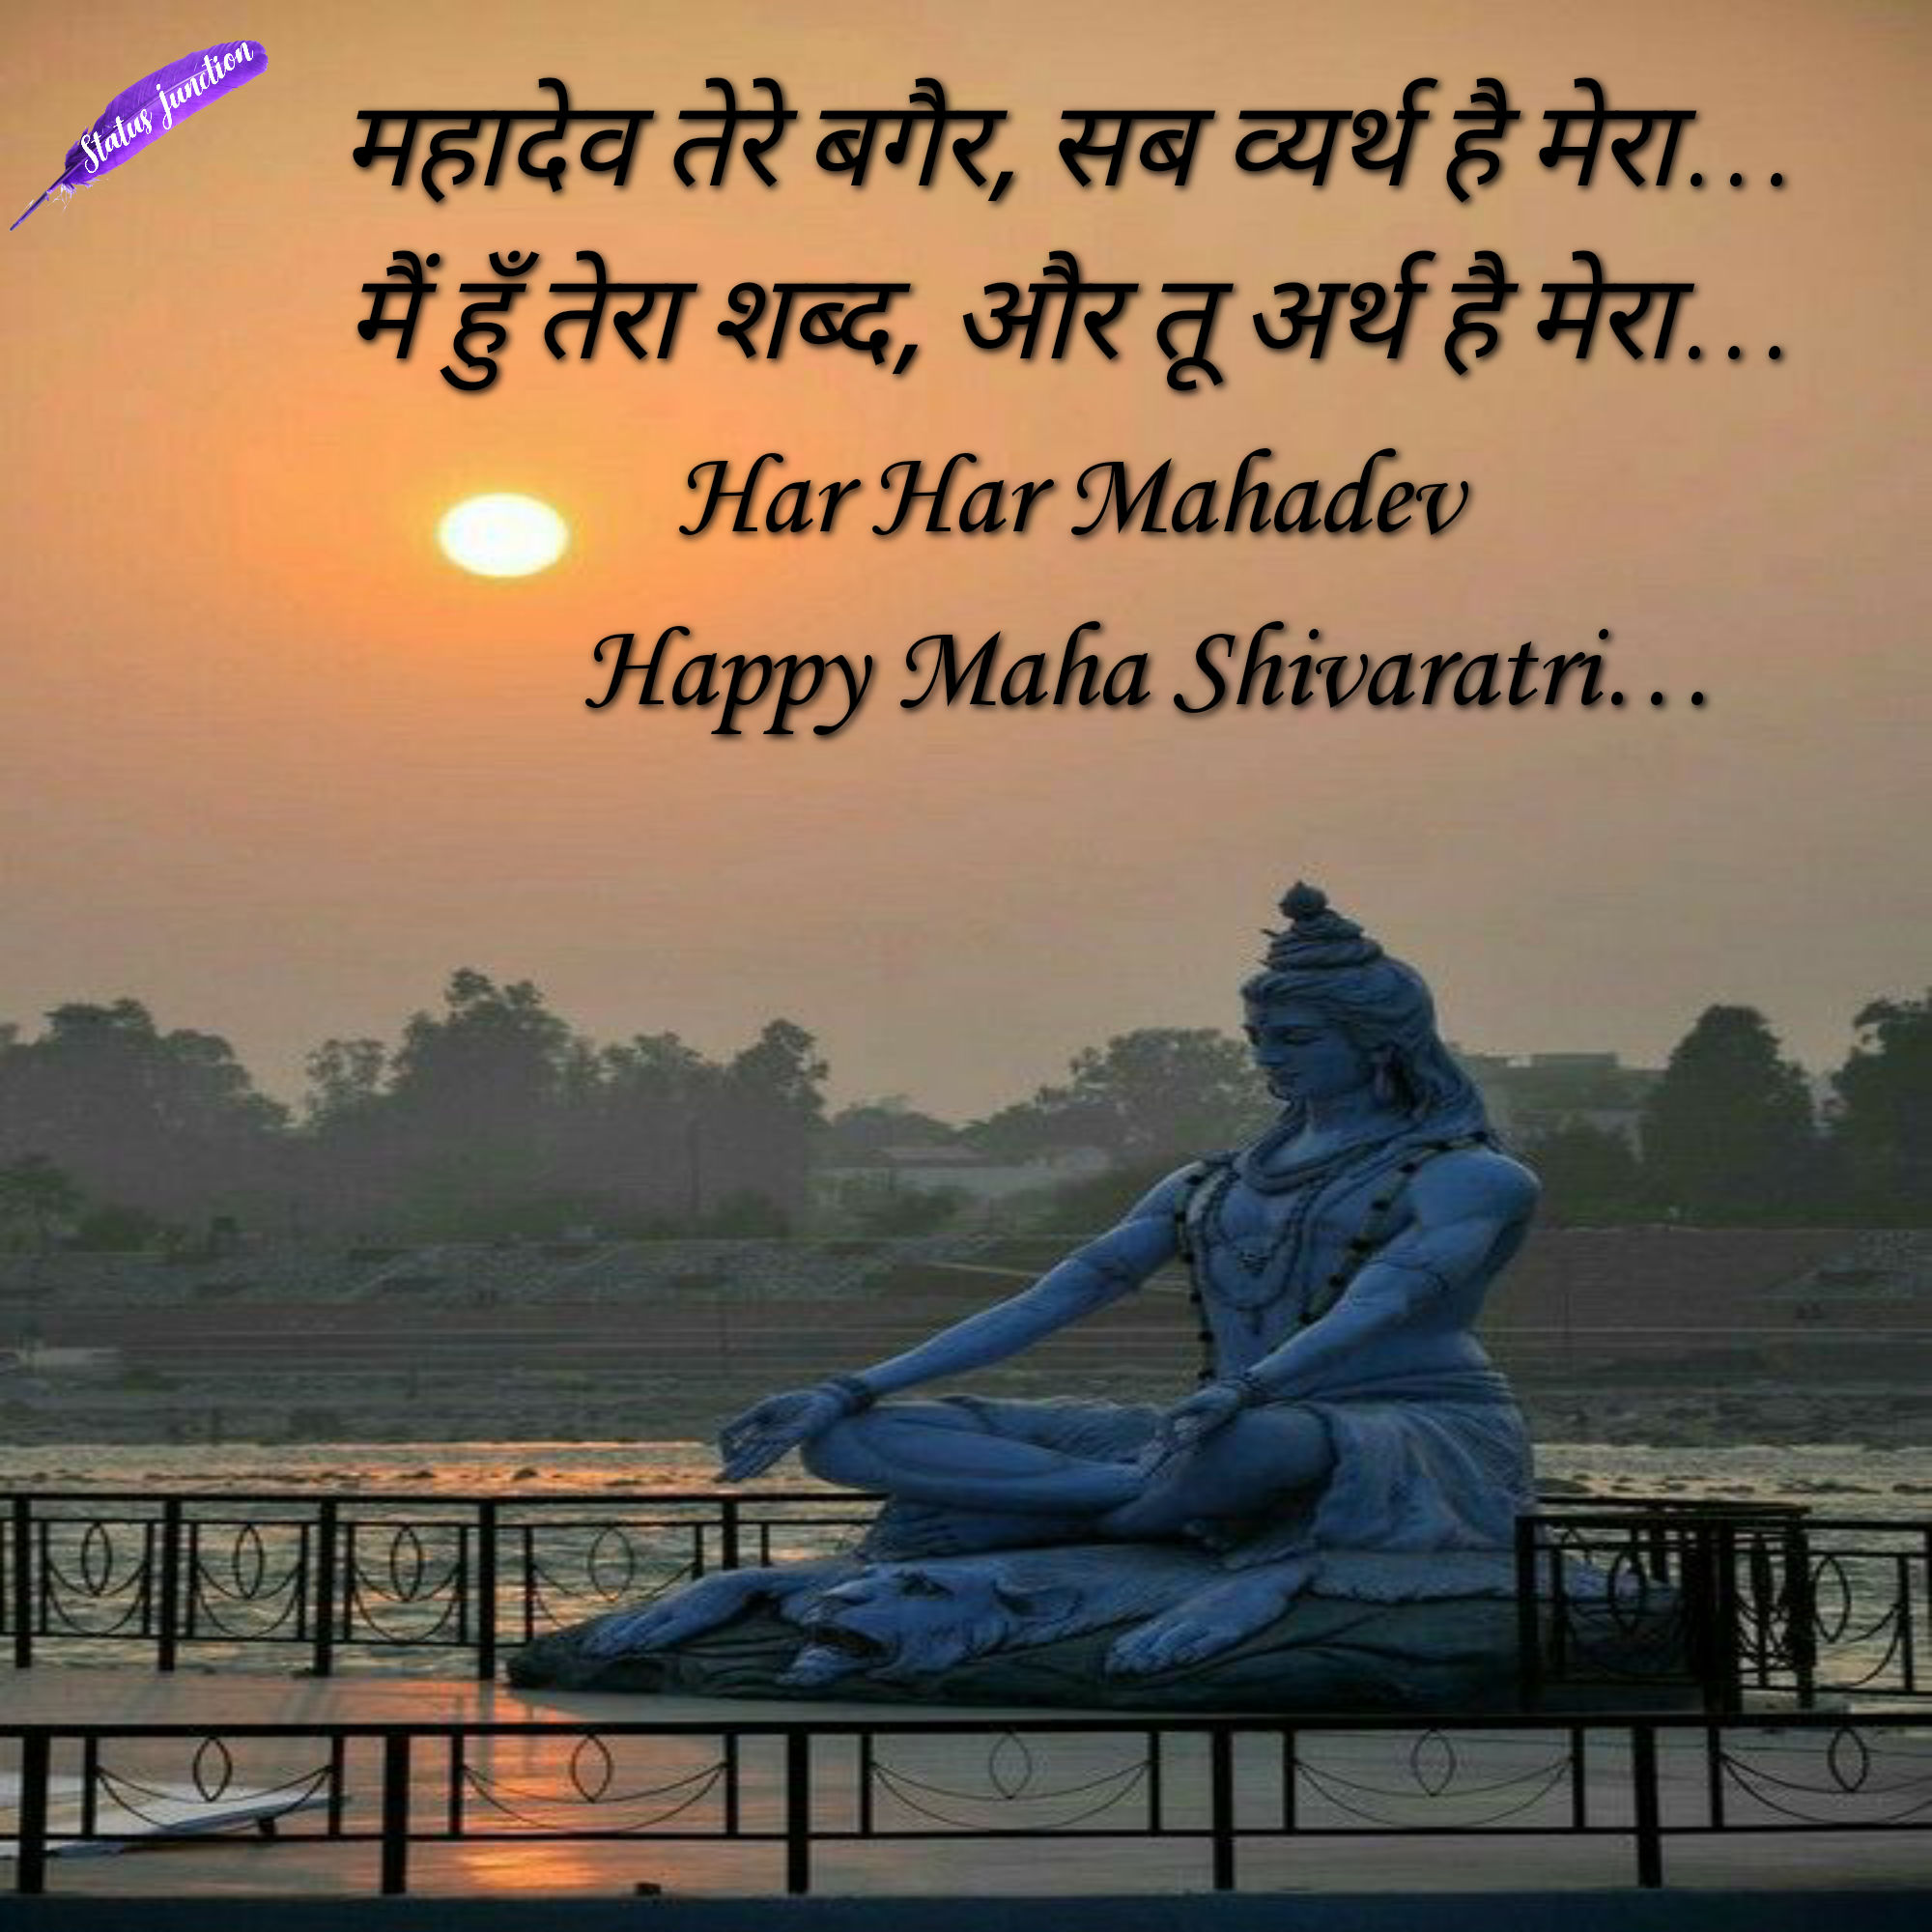 महादेव तेरे बगैर, सब व्यर्थ है मेरा ,मैं हुँ तेरा शब्द, और तू अर्थ है मेरा  Har Har Mahadev Happy Maha Shivaratri